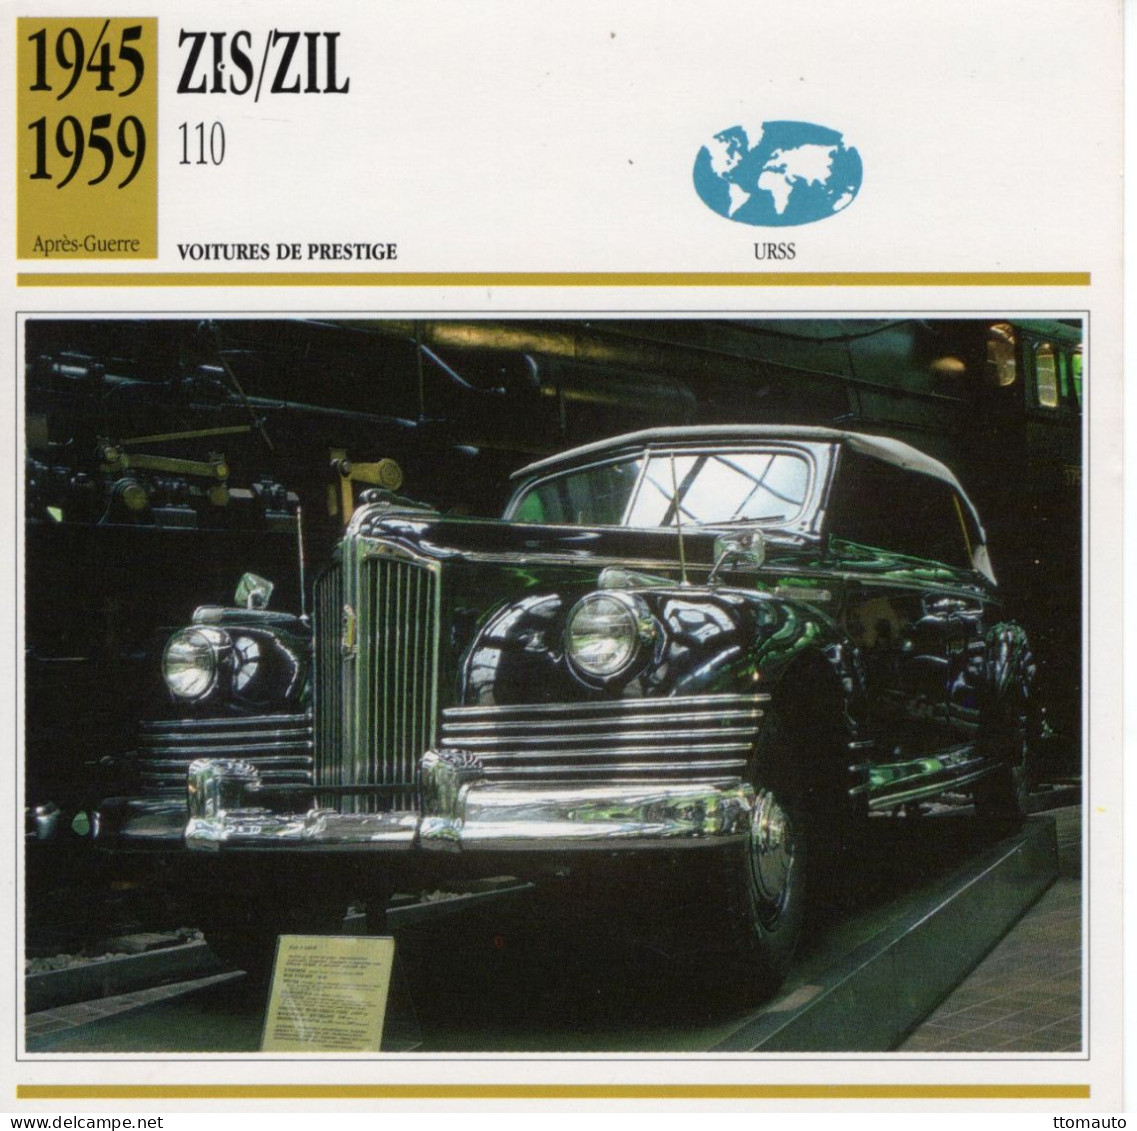 Zis/Zil 110   -  1952  - Voiture De Prestige -  Fiche Technique Automobile (URSS) - Voitures